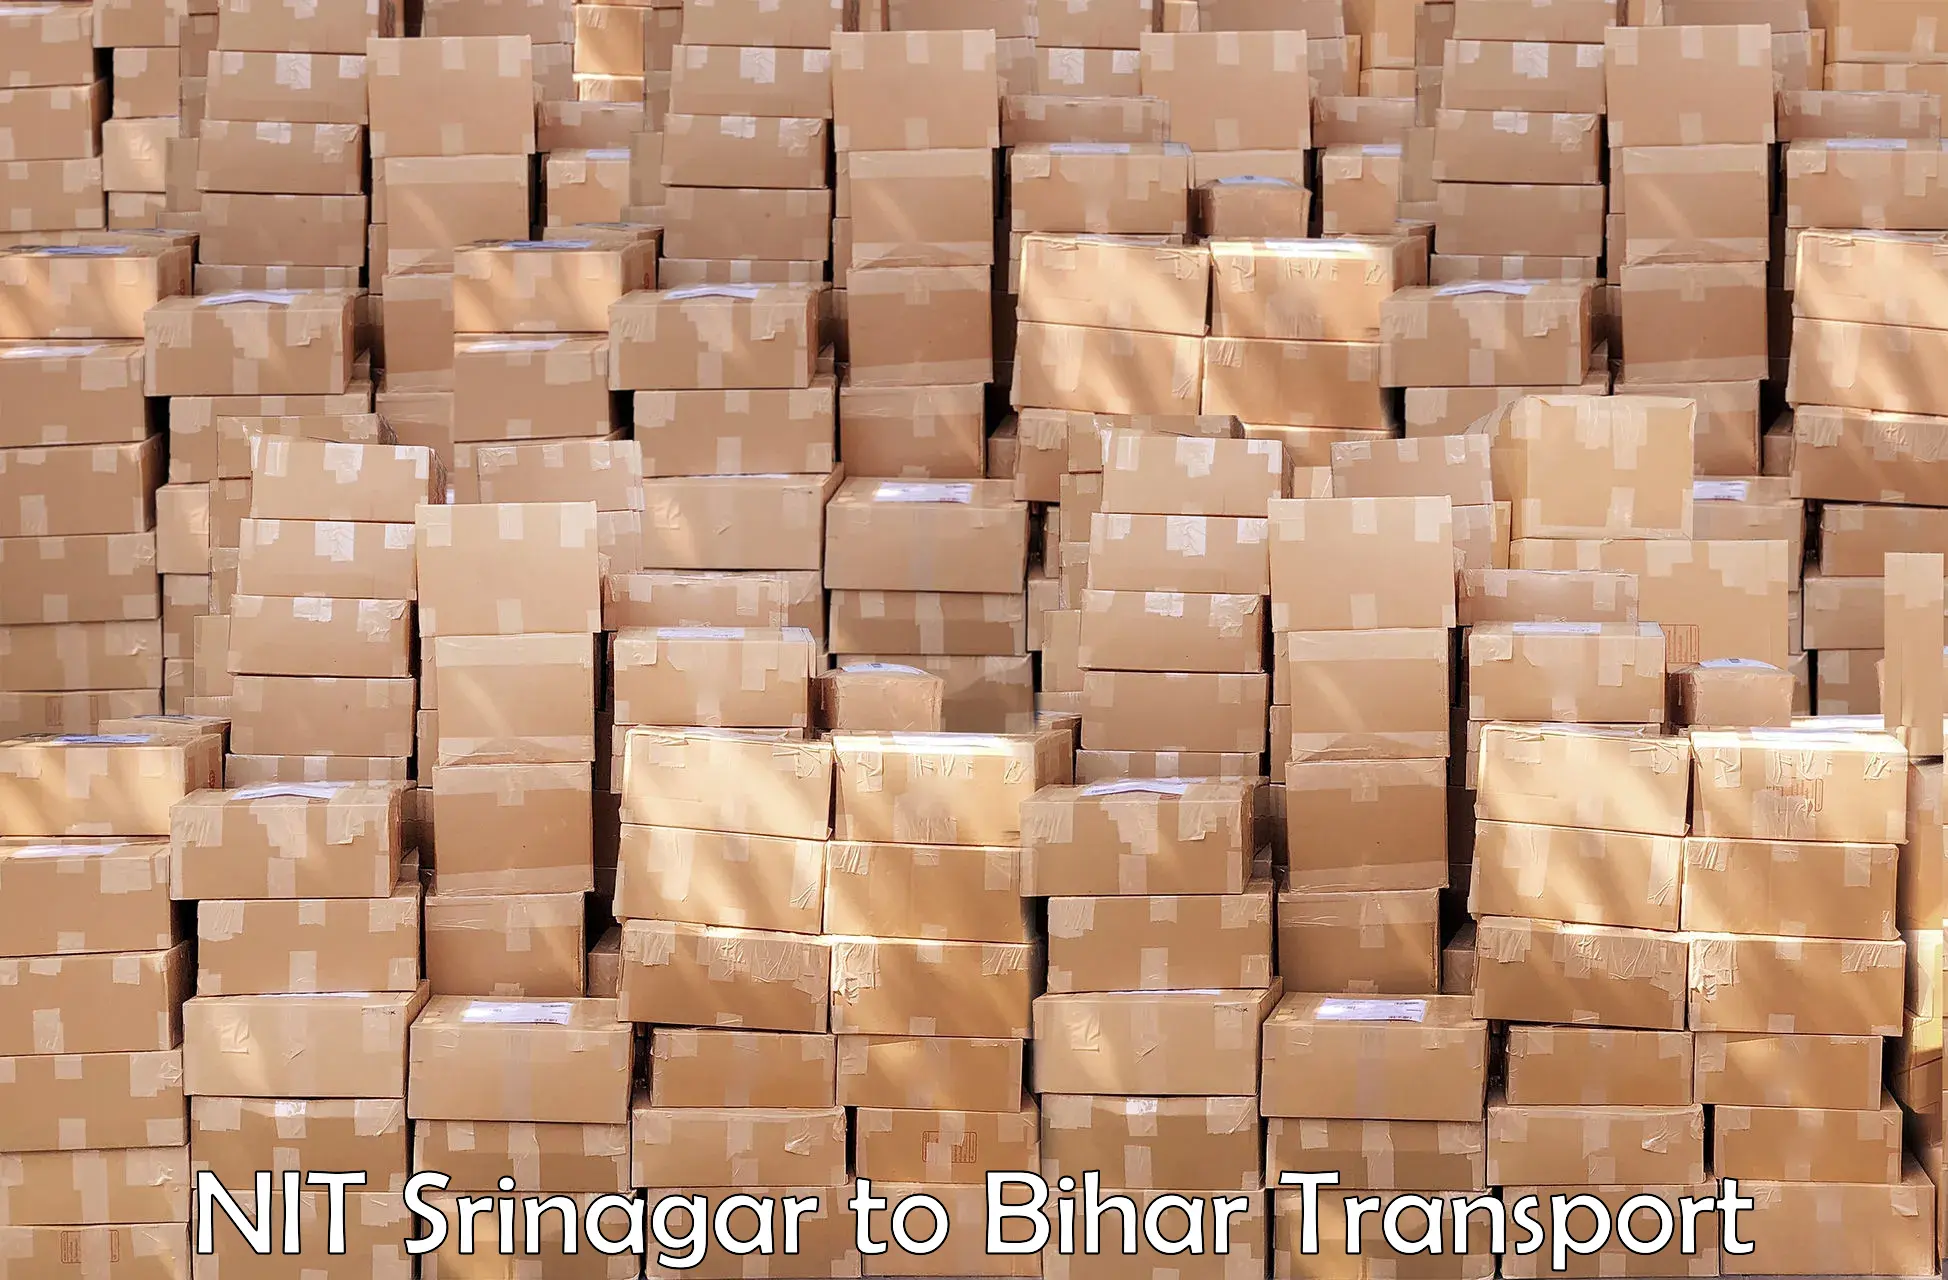 Bike shipping service NIT Srinagar to Bharwara